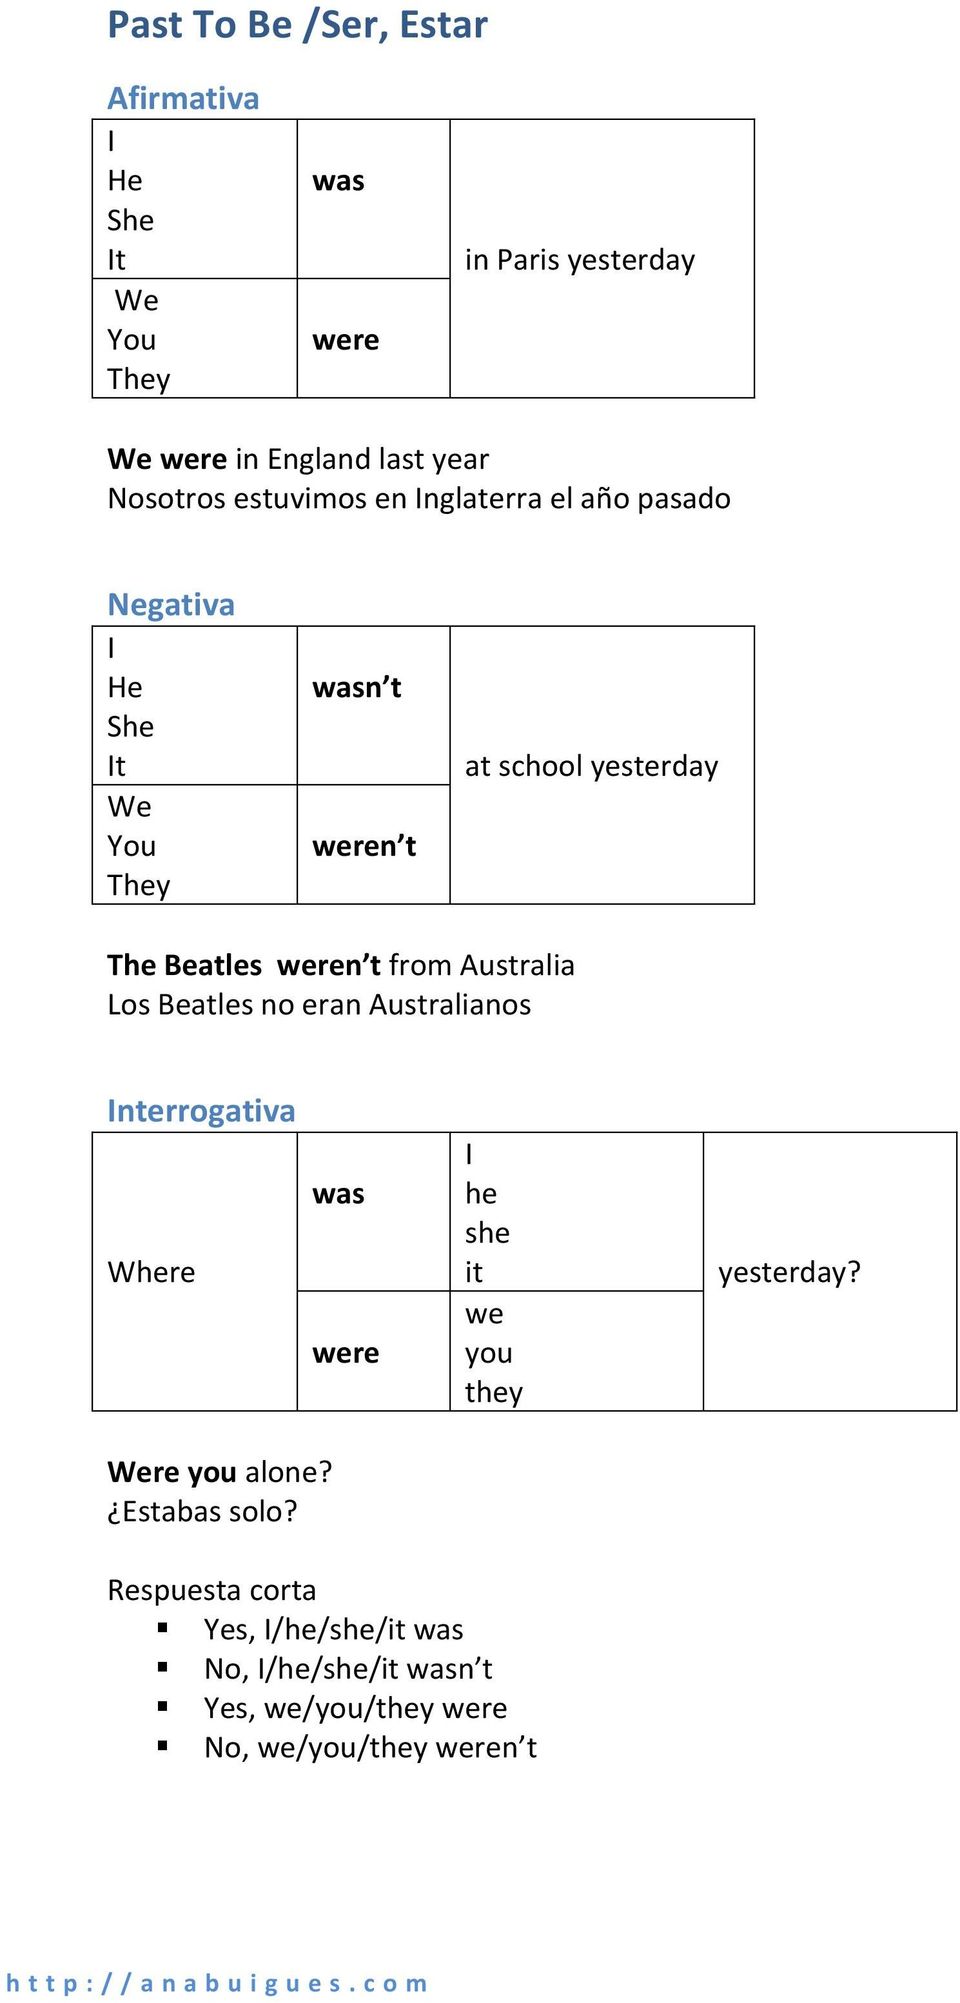 Los Beatles no eran Australianos nterrogativa Where re you alone? Estabas solo?